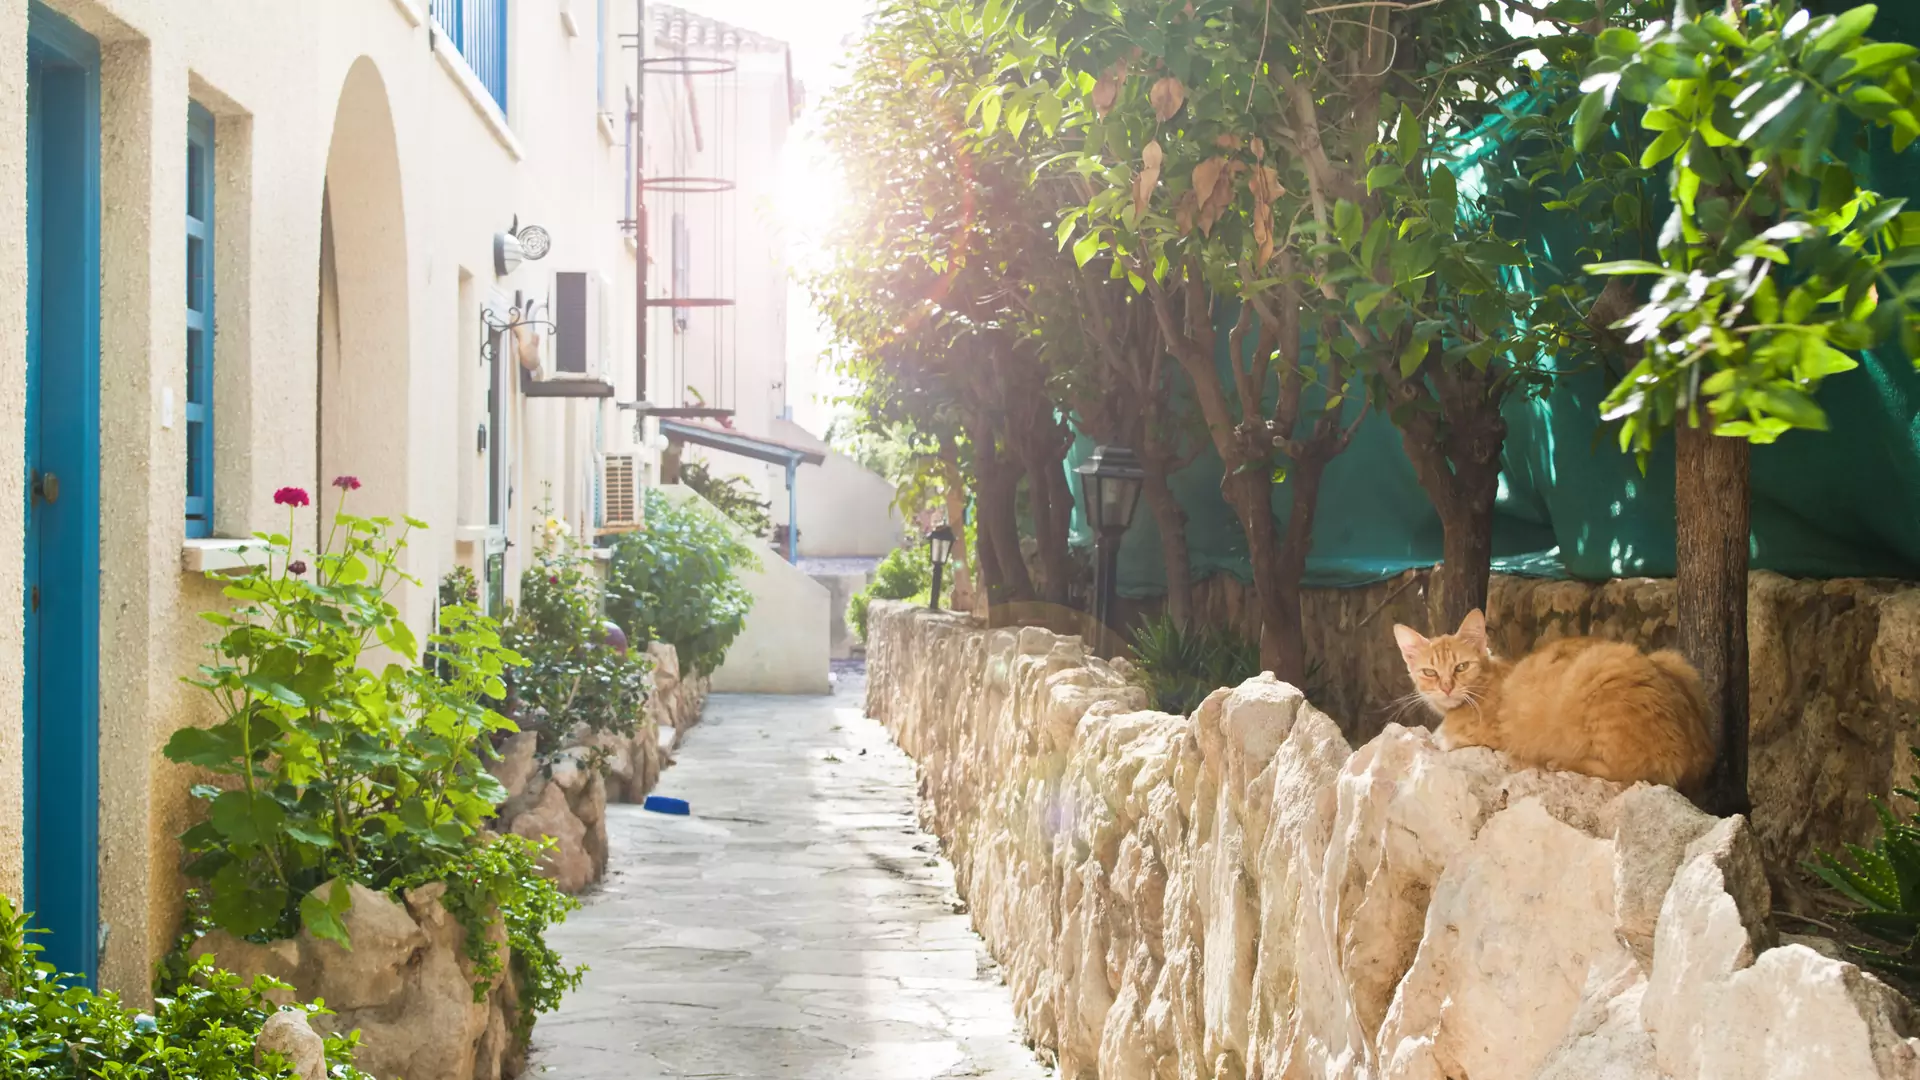 Wakacje na wyspie pełnej kotów — najpiękniejsze miejsca na Cyprze